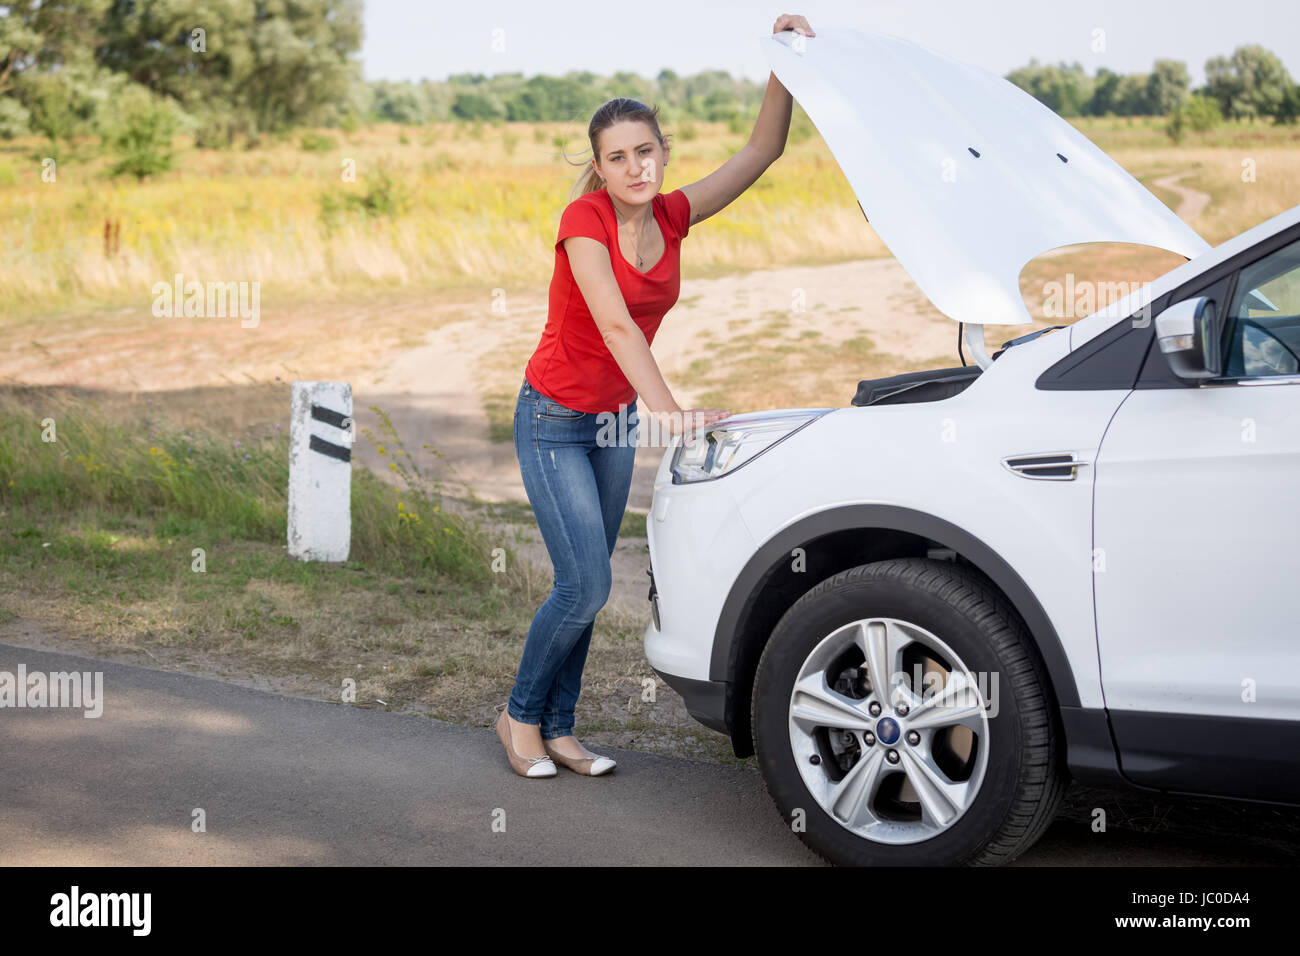 Junge Frau Öffnung Haube von dem kaputten Auto am Straßenrand Stockfoto